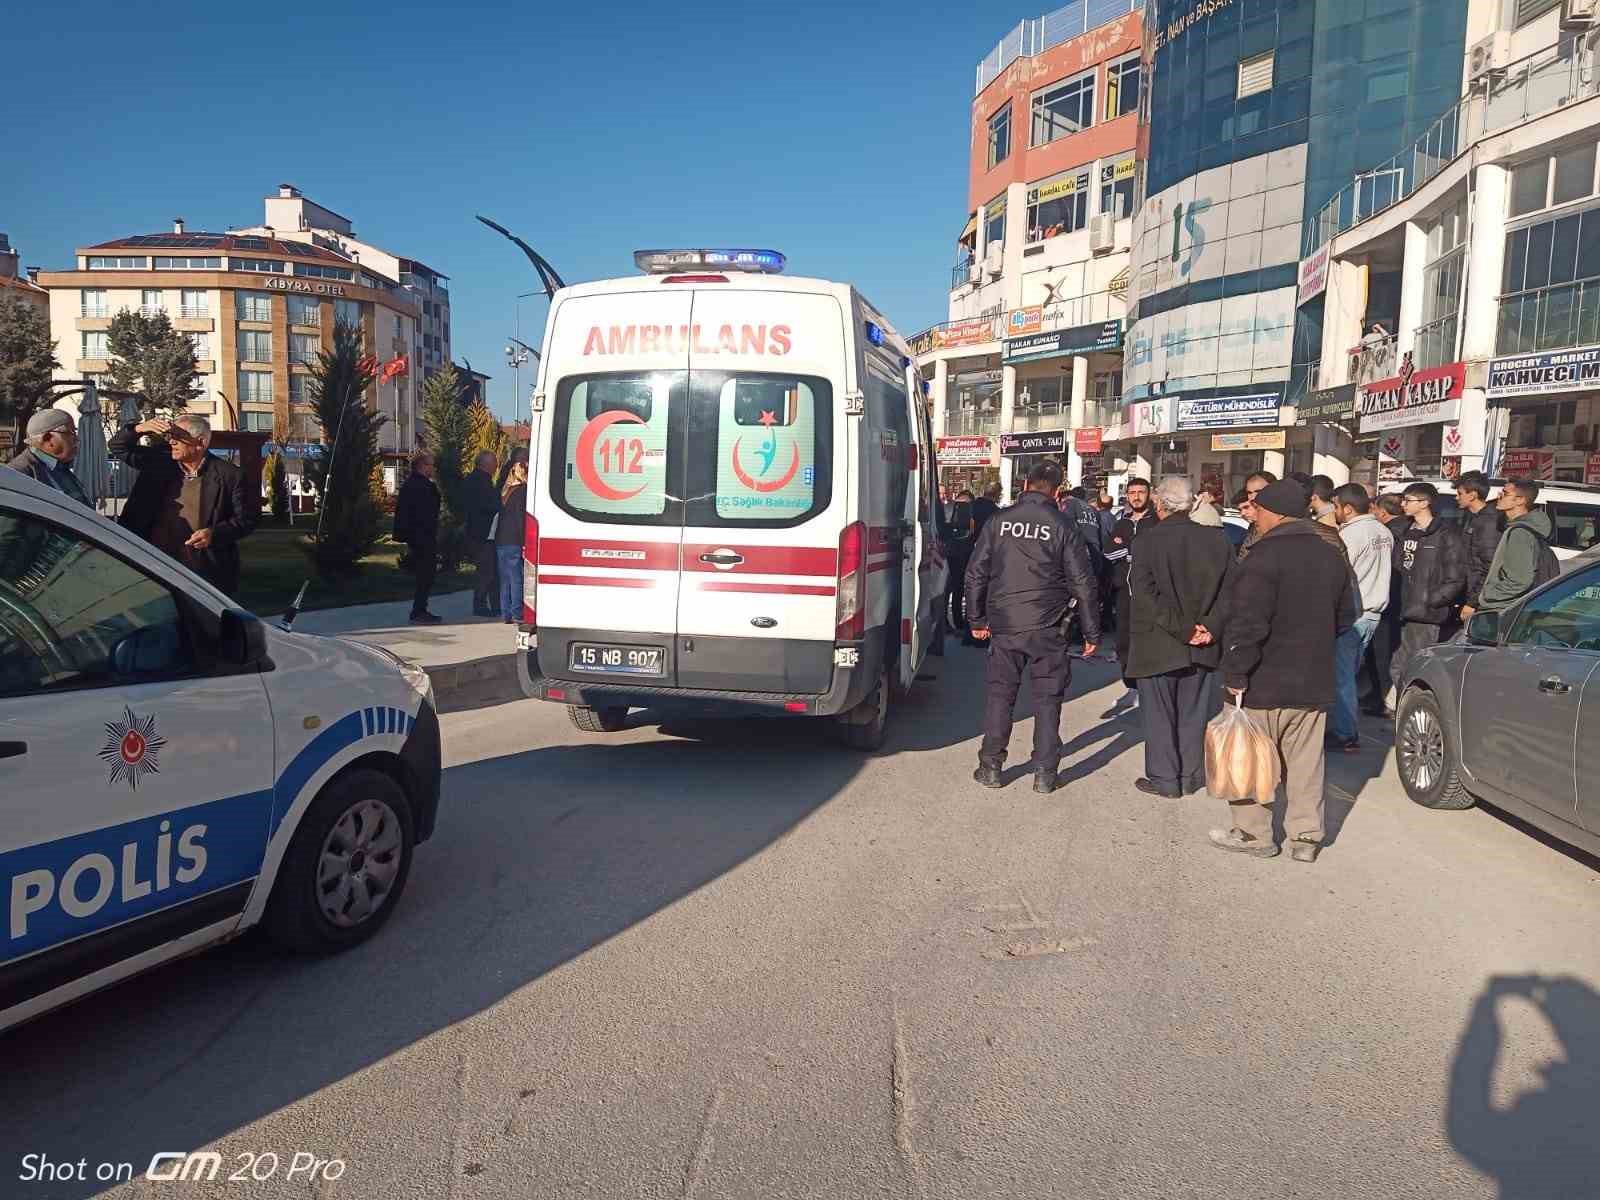 Burdur’da seyir halindeki motosiklet yayaya çarptı: 2 yaralı